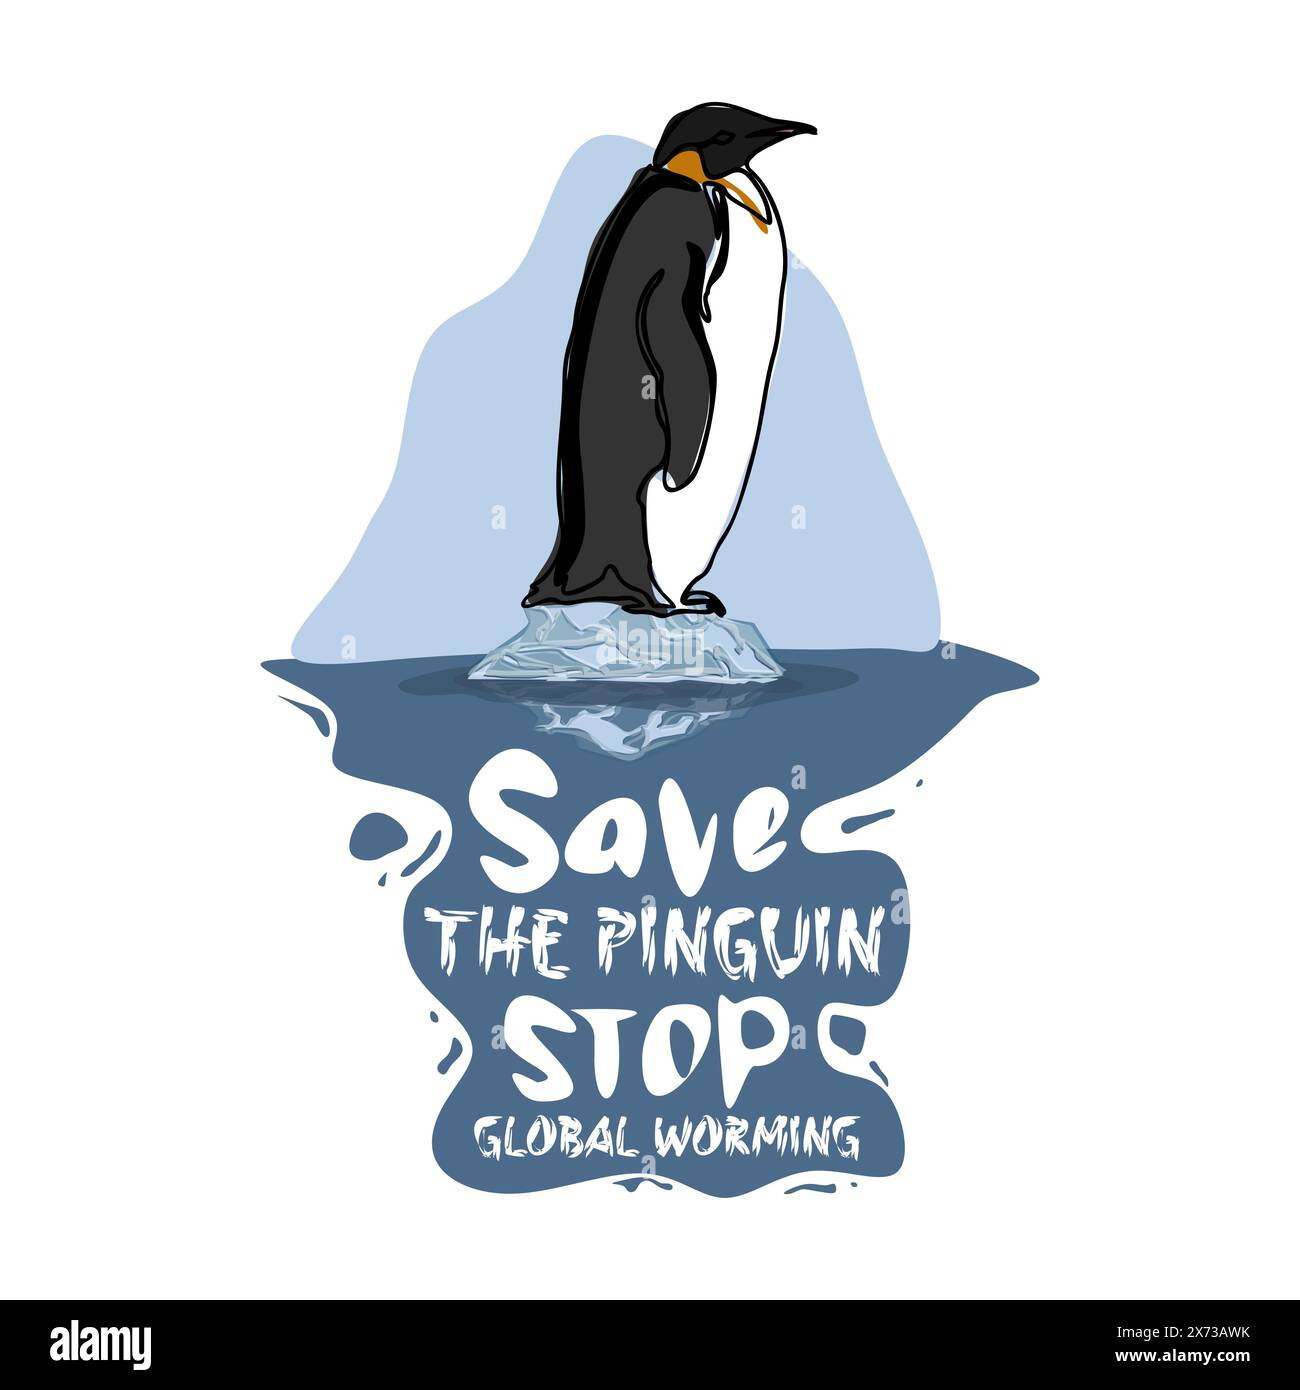 Posterdesign zur globalen Erwärmung. Ökologische Katastrophe. Rettet arktische und arktische Tiere. Umwelt sparen. Rettet Pinguine und Eisbären Stock Vektor